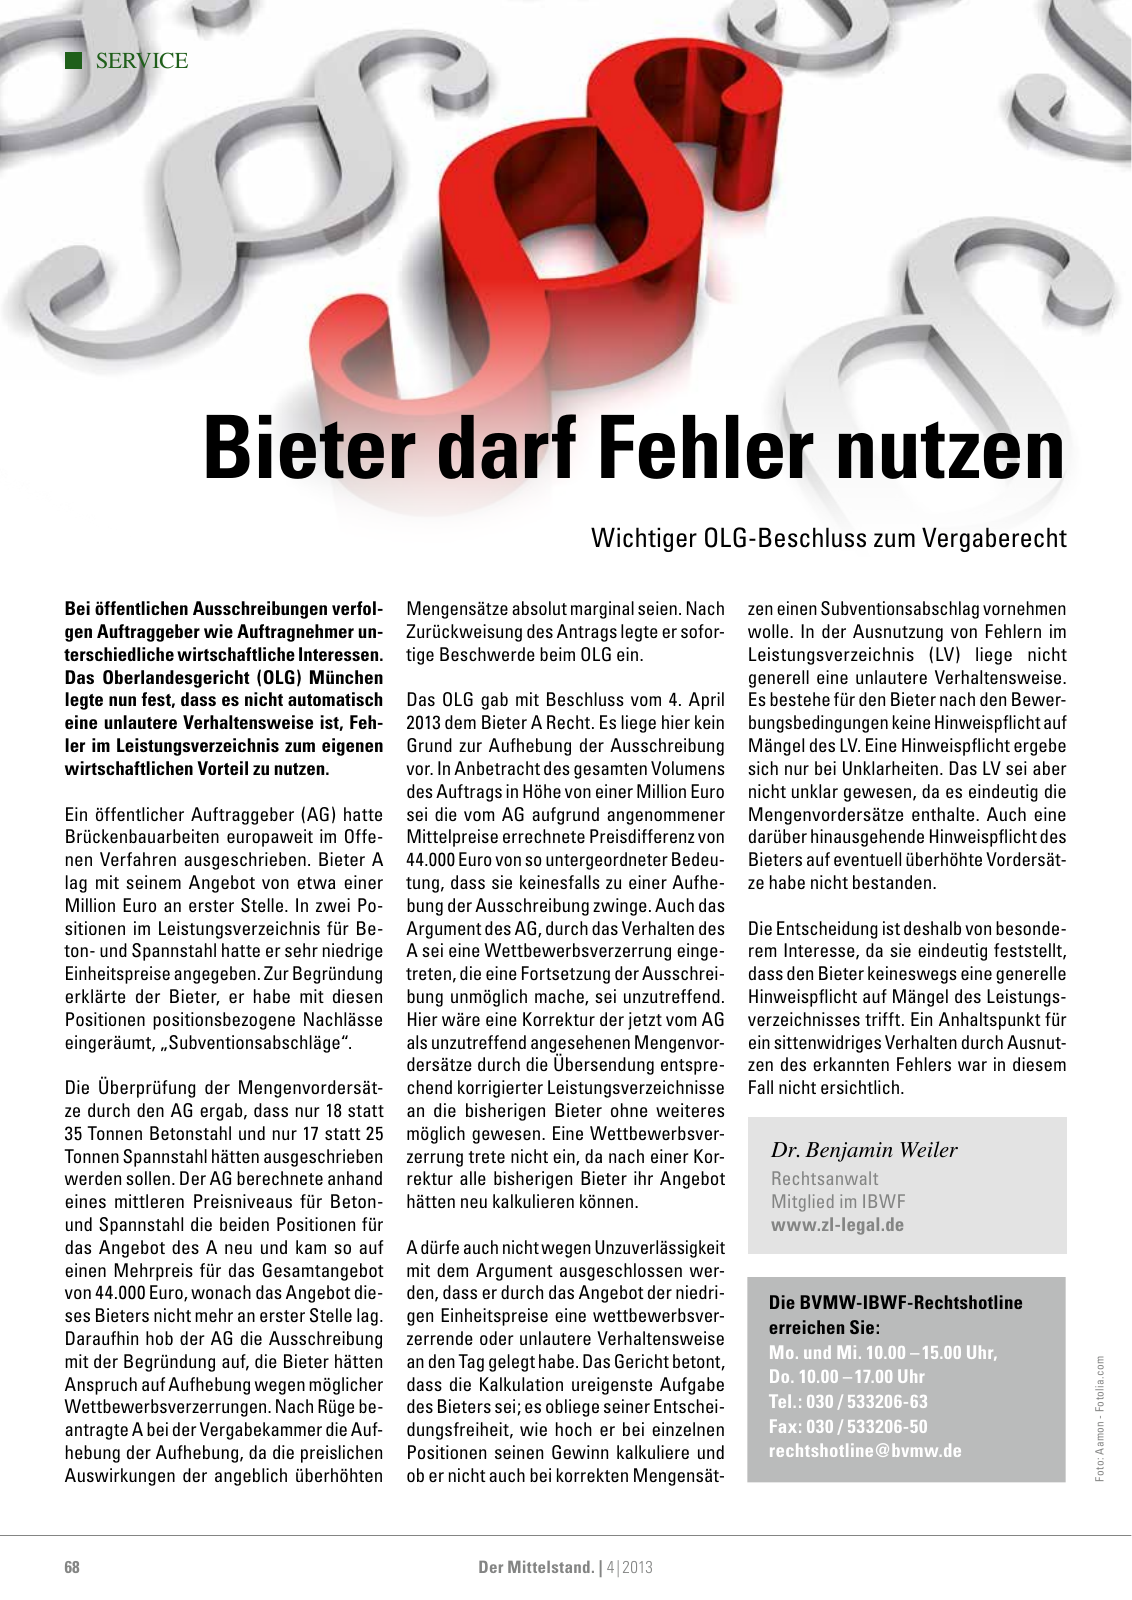 Vorschau Der Mittelstand. 4|2013 Seite 68